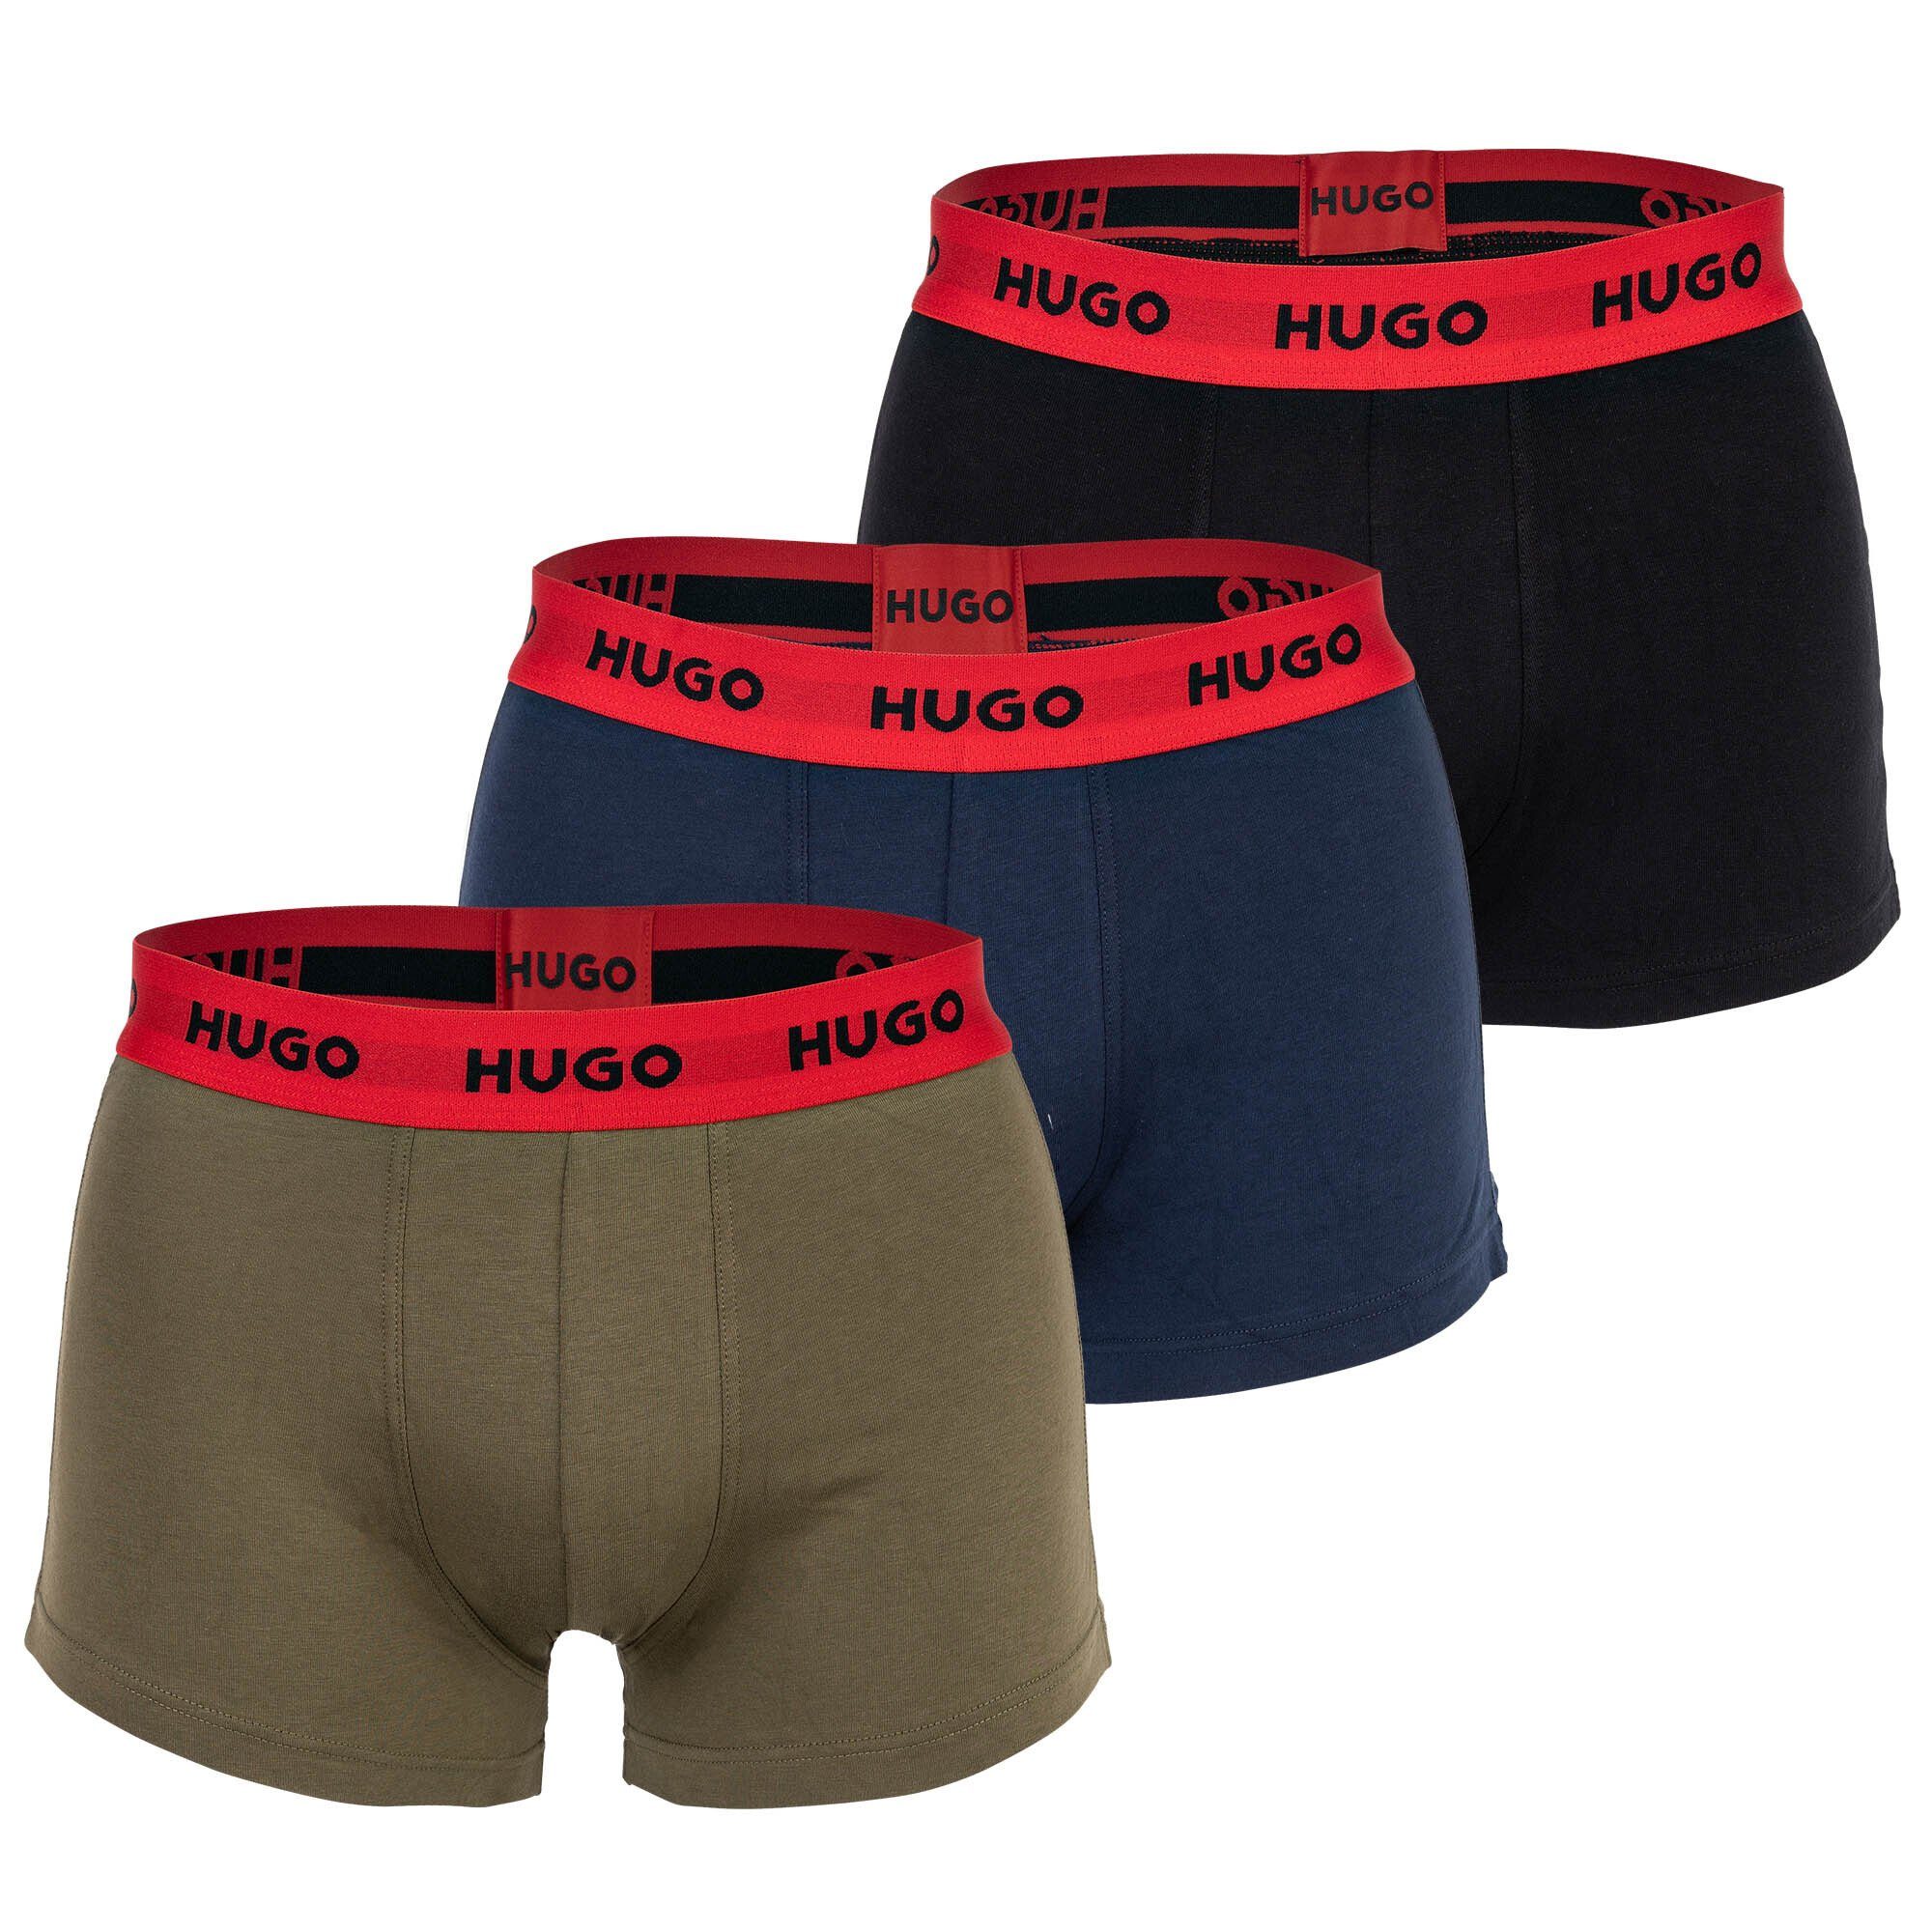 HUGO Boxer Herren Boxer Shorts, 3er Pack - Trunks Triplet Blau/Grün/Schwarz